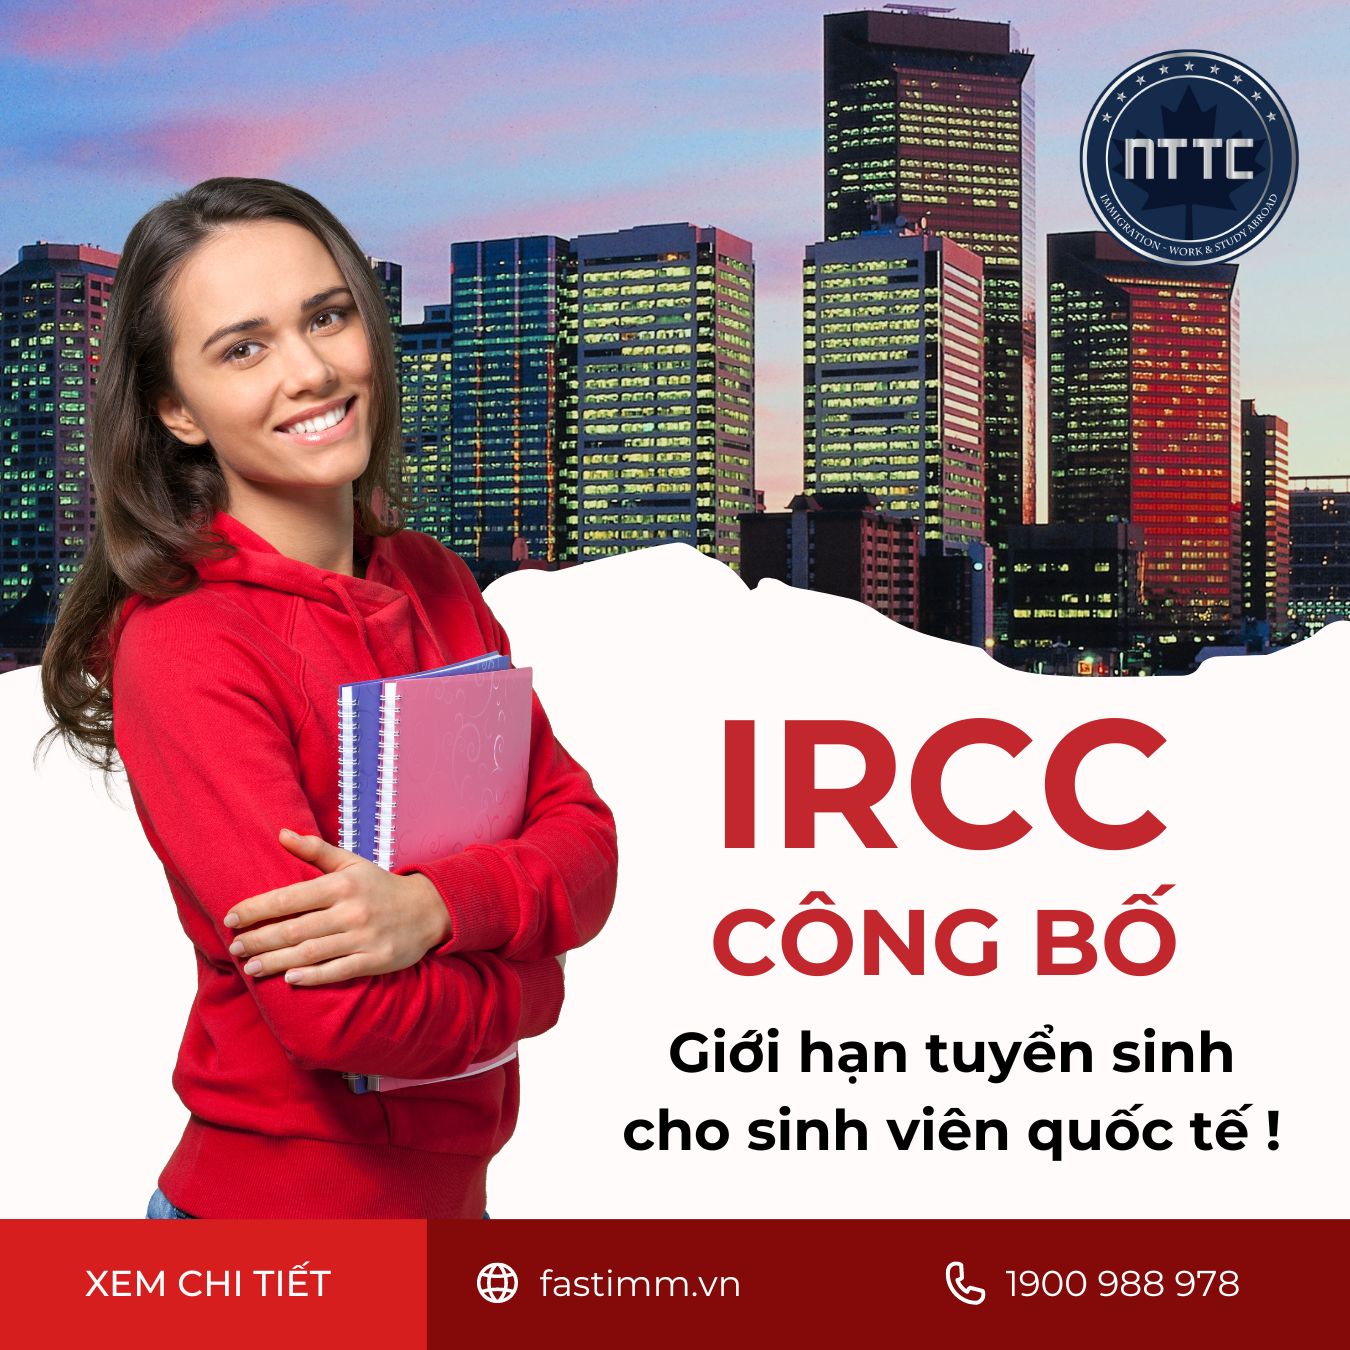 IRCC công bố giới hạn tuyển sinh cho sinh viên quốc tế !